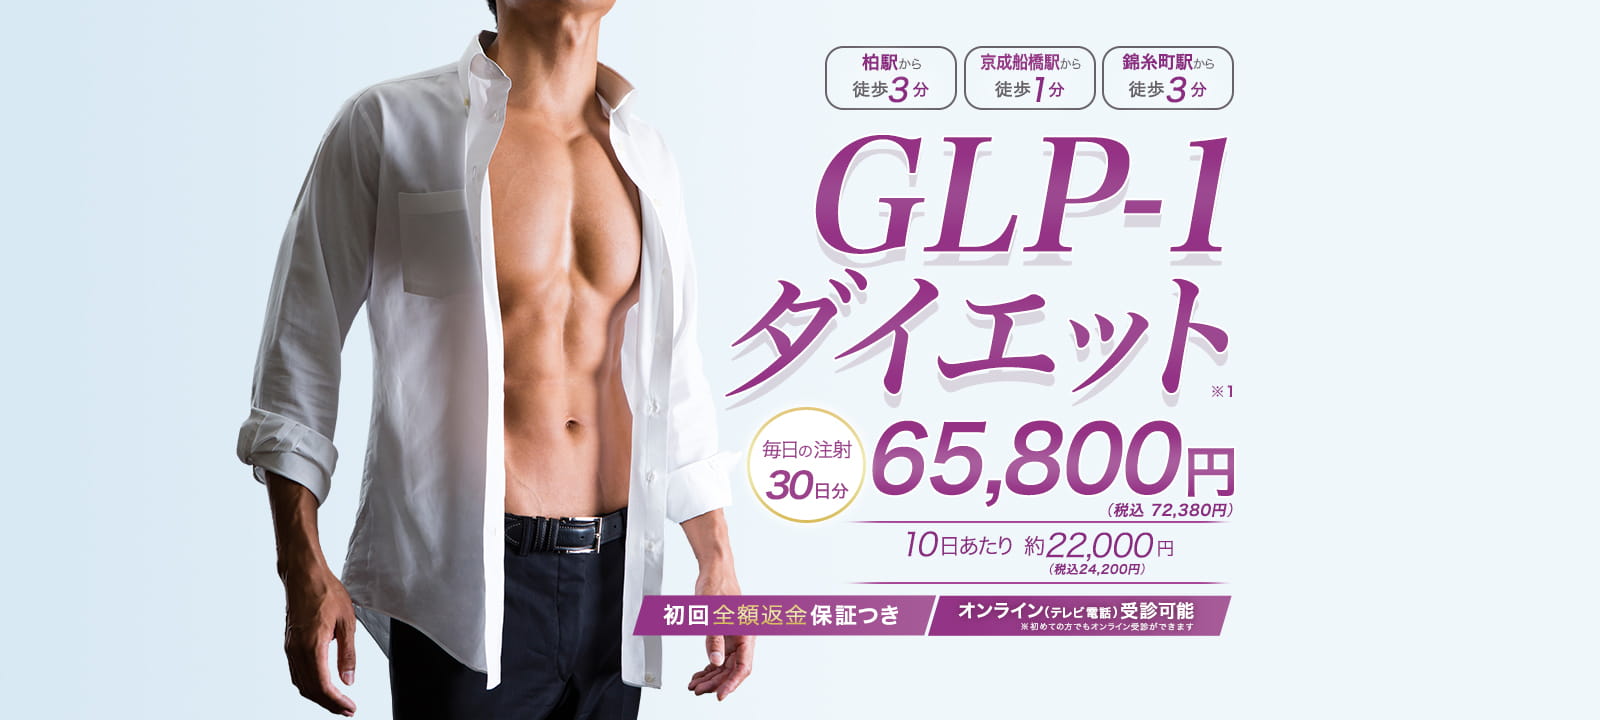 GLP-1ダイエット 30日分72,380円(税込)